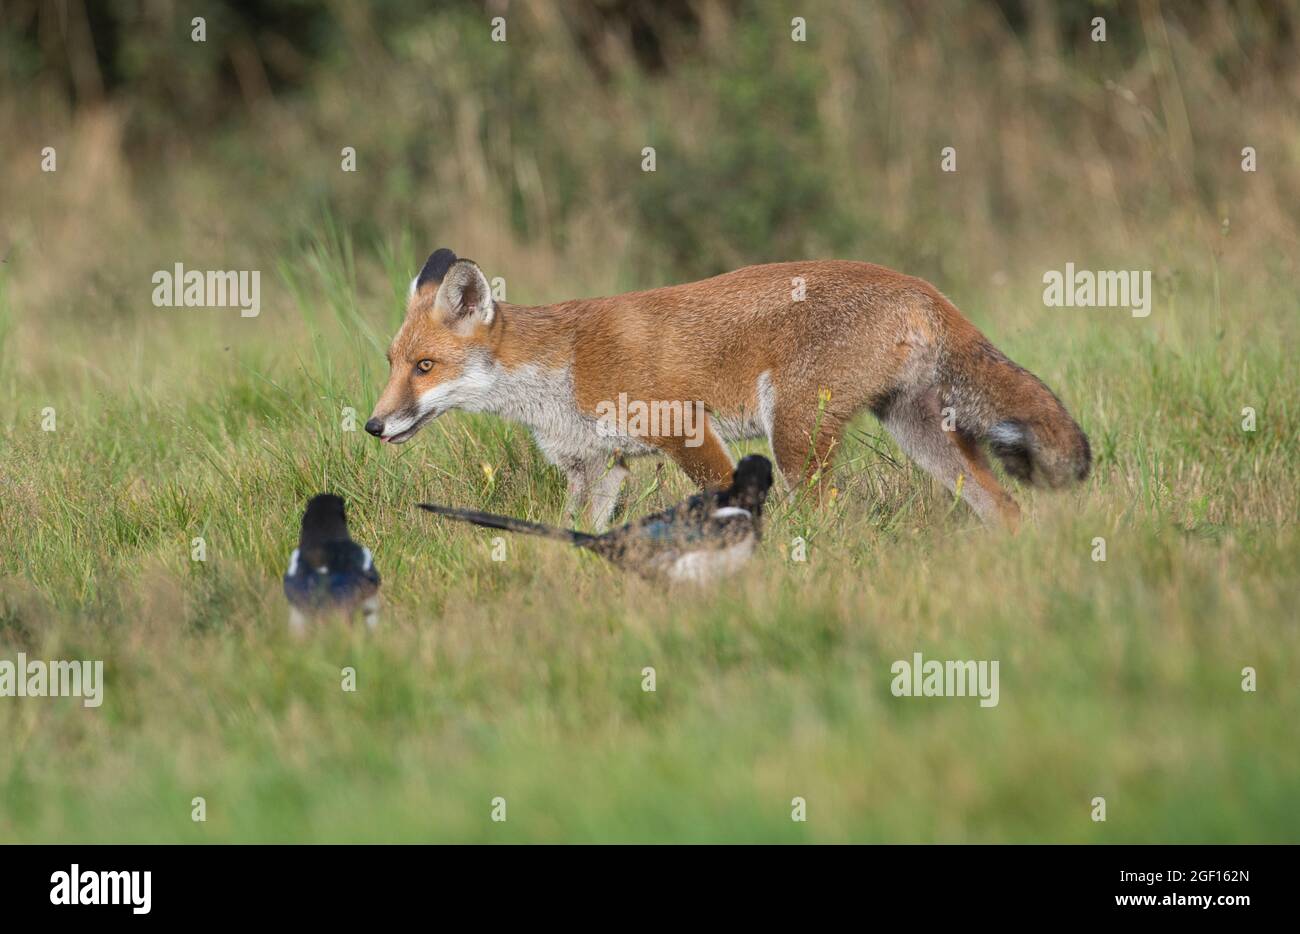 Volpe rossa (Vulpes vulpes) che si muove attraverso un prato in un ambiente rurale e guardato da due magpie Foto Stock